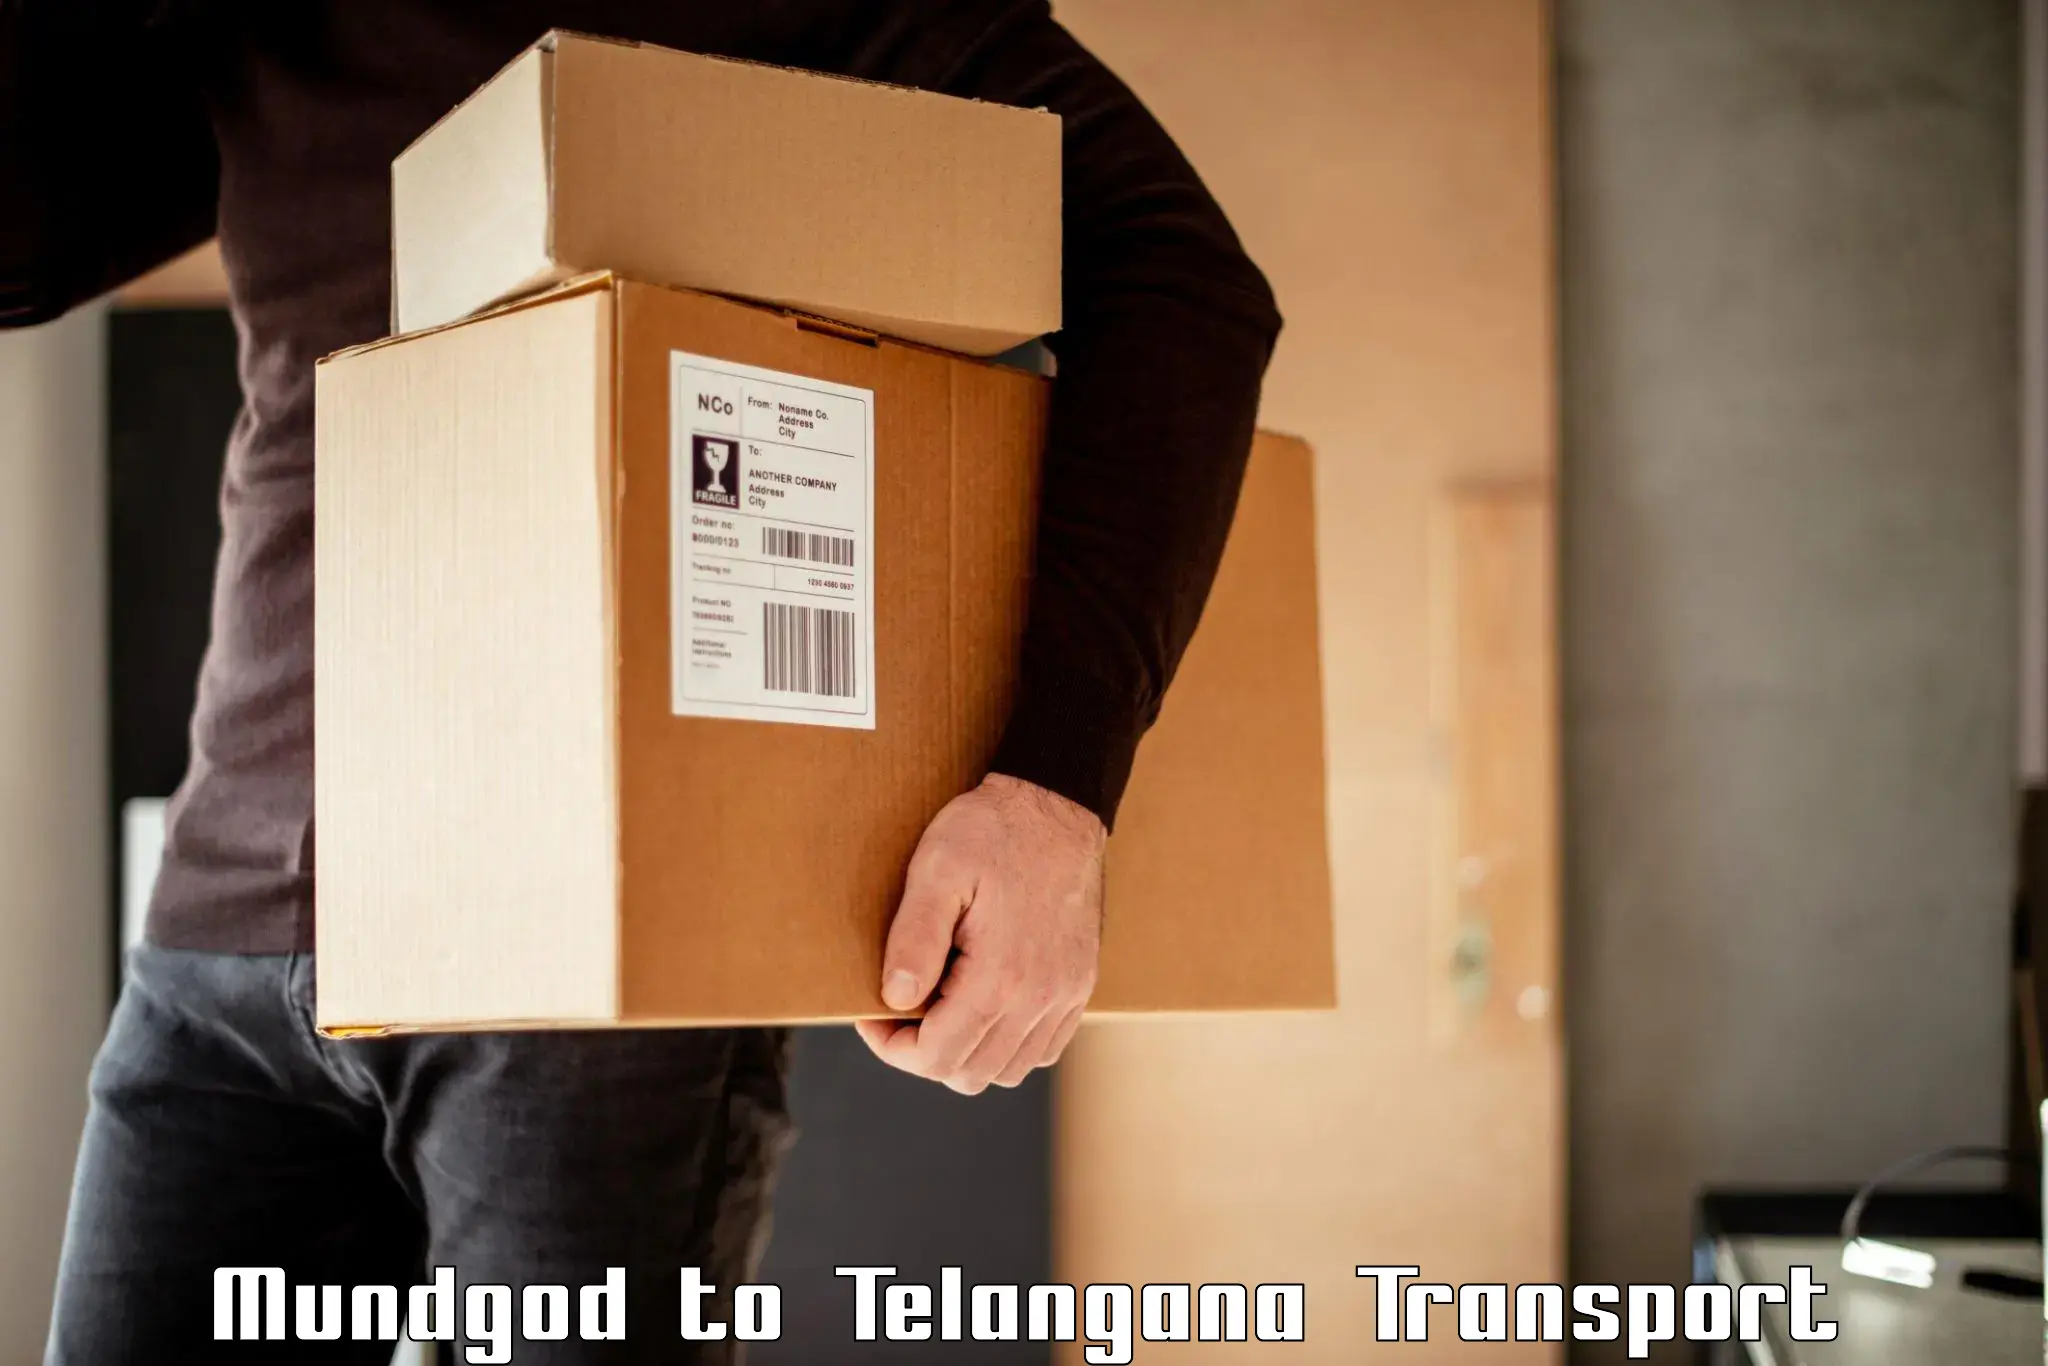 Commercial transport service Mundgod to Telangana